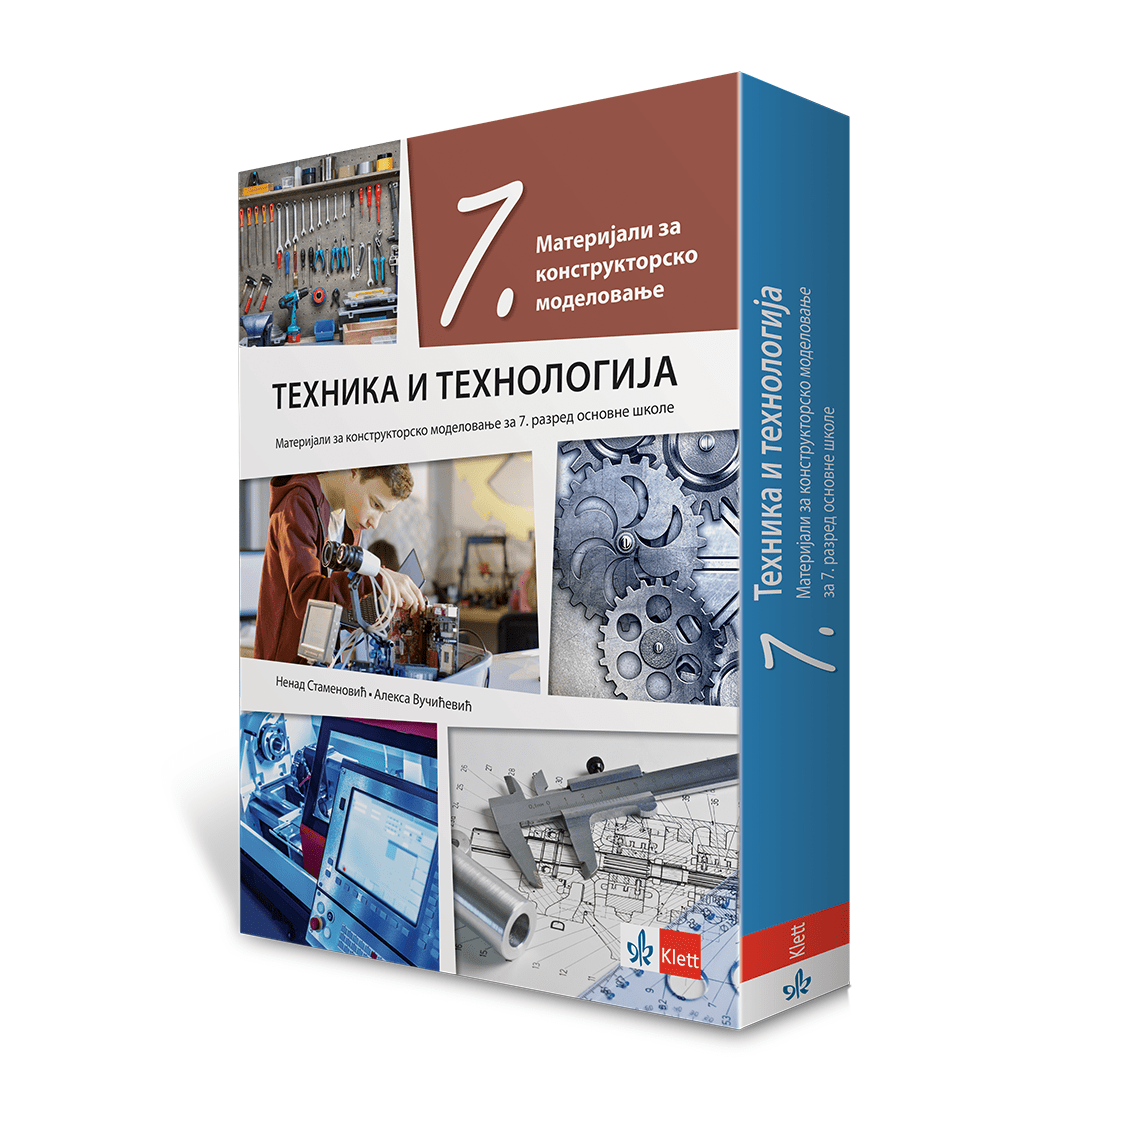 Техника и технологија 7, материјали за конструкторско моделовање са упутством на словачком језику